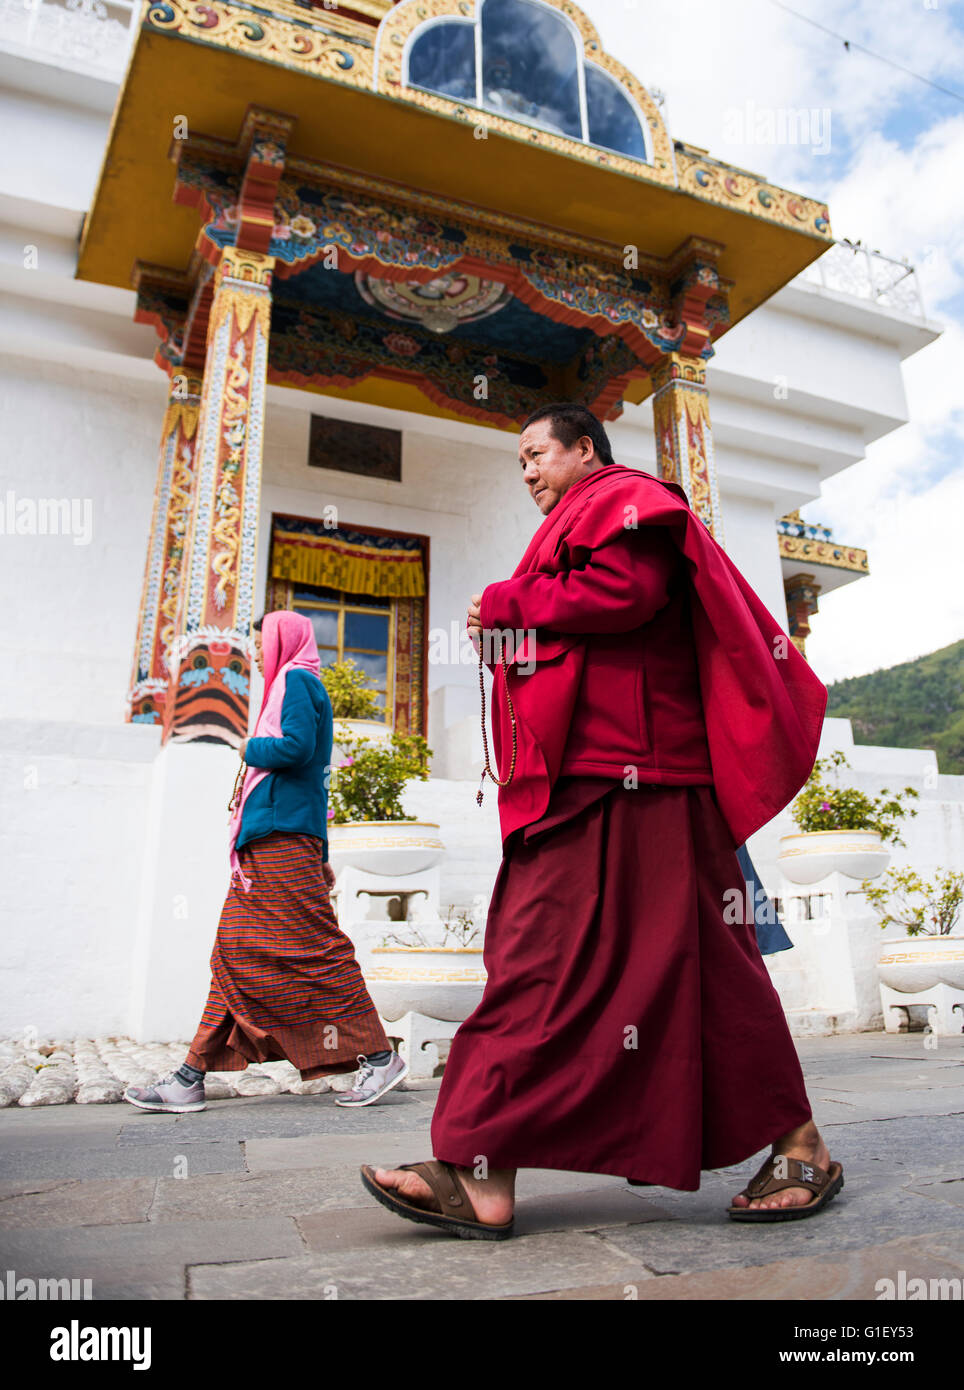 Le moine bouddhiste marcher autour de Jigme Dorji Wangchuck du Bhoutan Thimphu memorial Banque D'Images